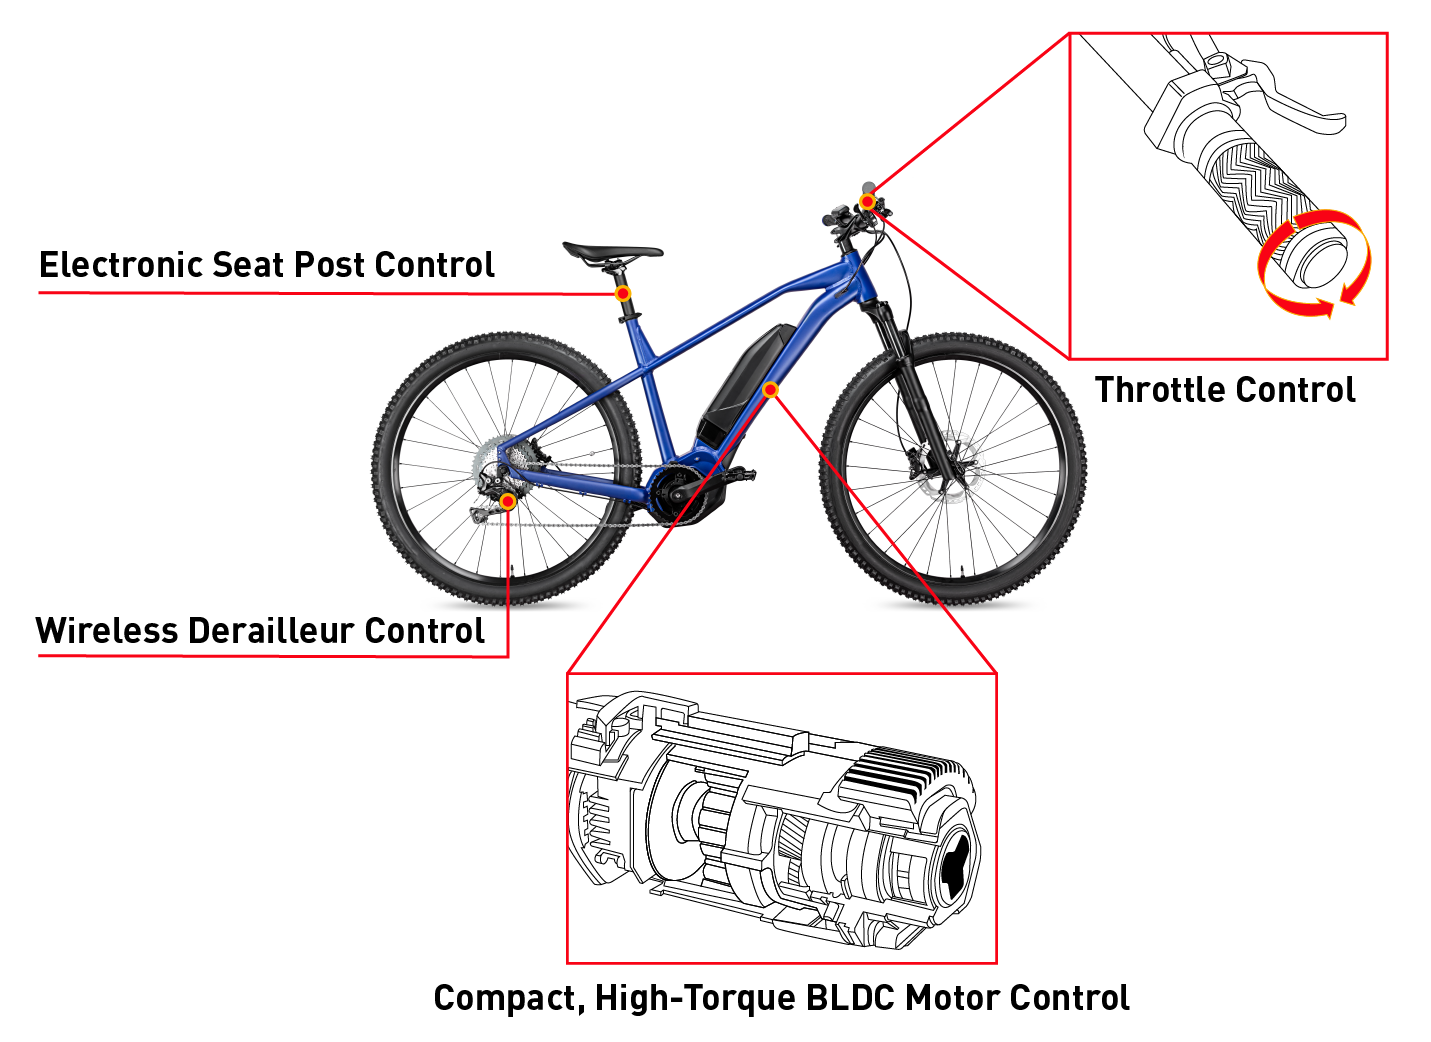 角度传感器用例：电动自行车